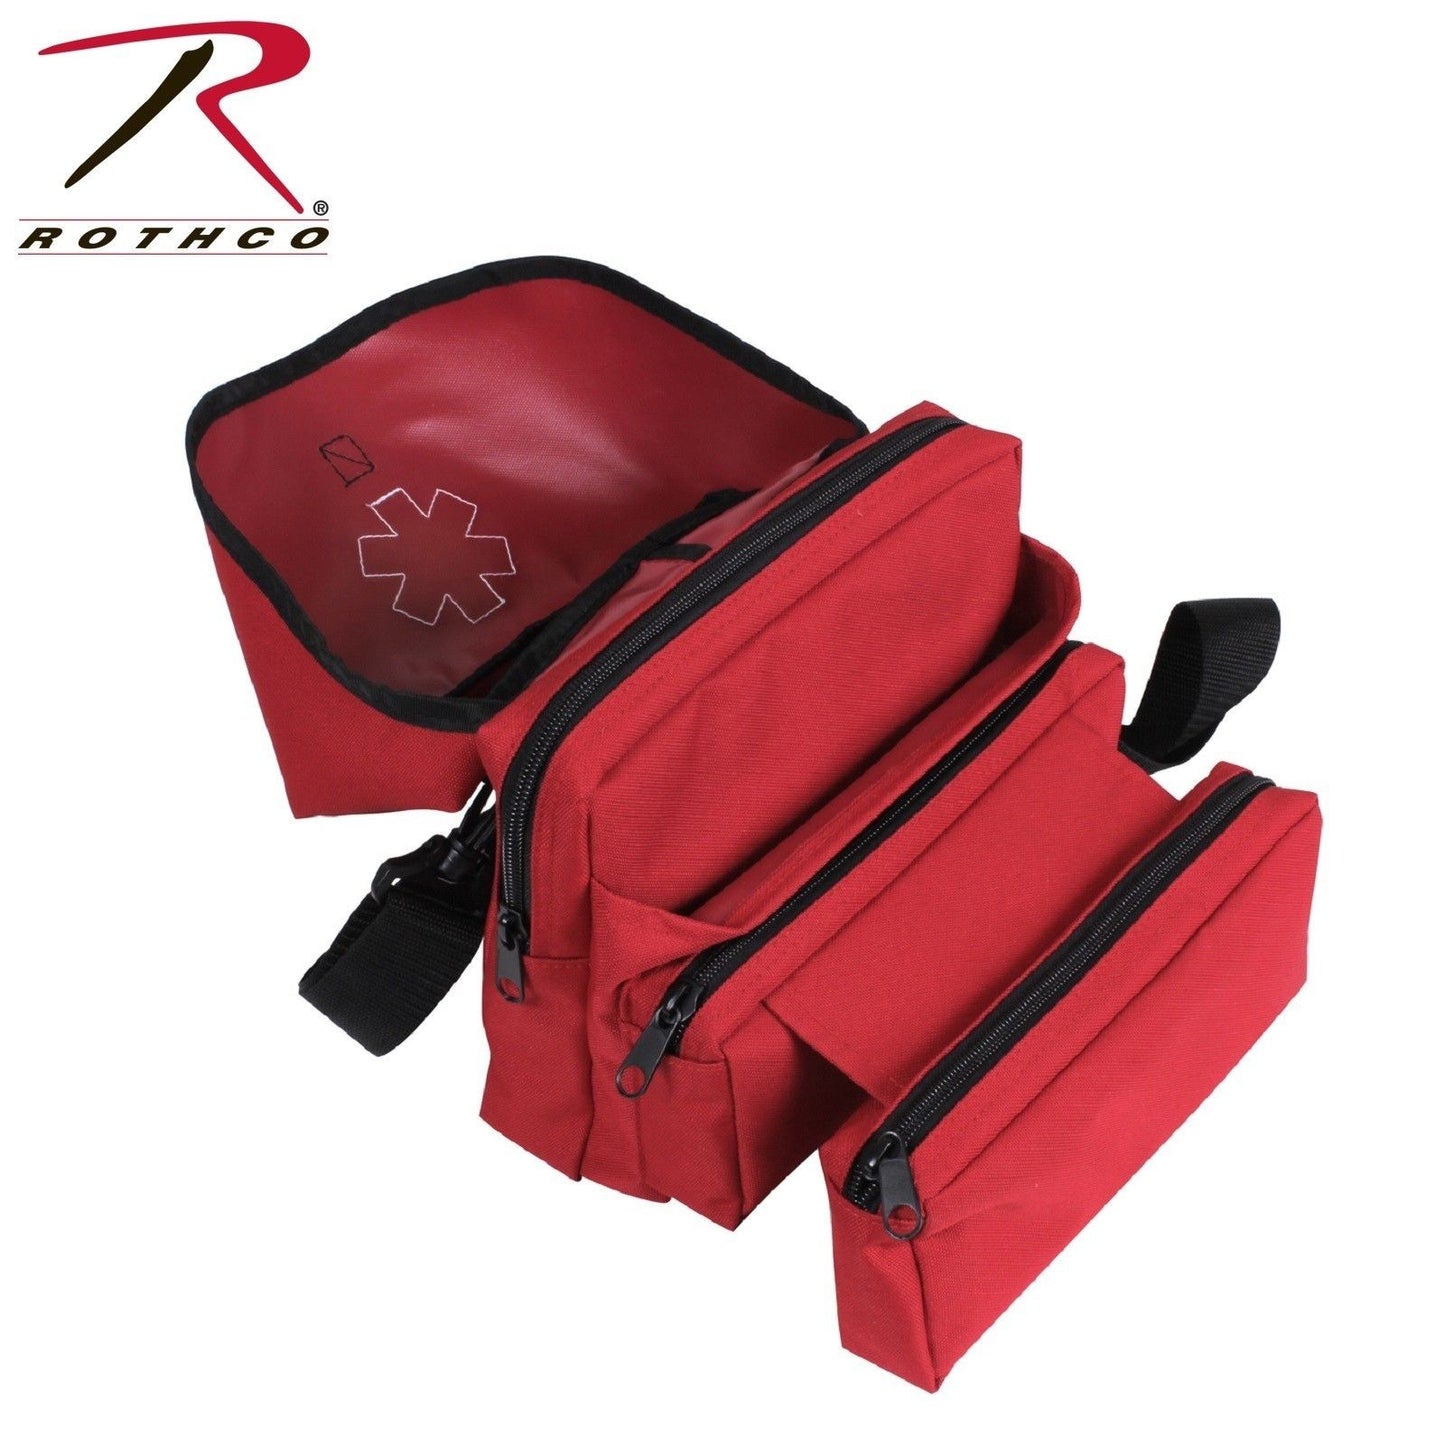 Rothco Red EMS Medical Field Bag - EMS/EMT Shoulder Bag With Star Of Life Emblem